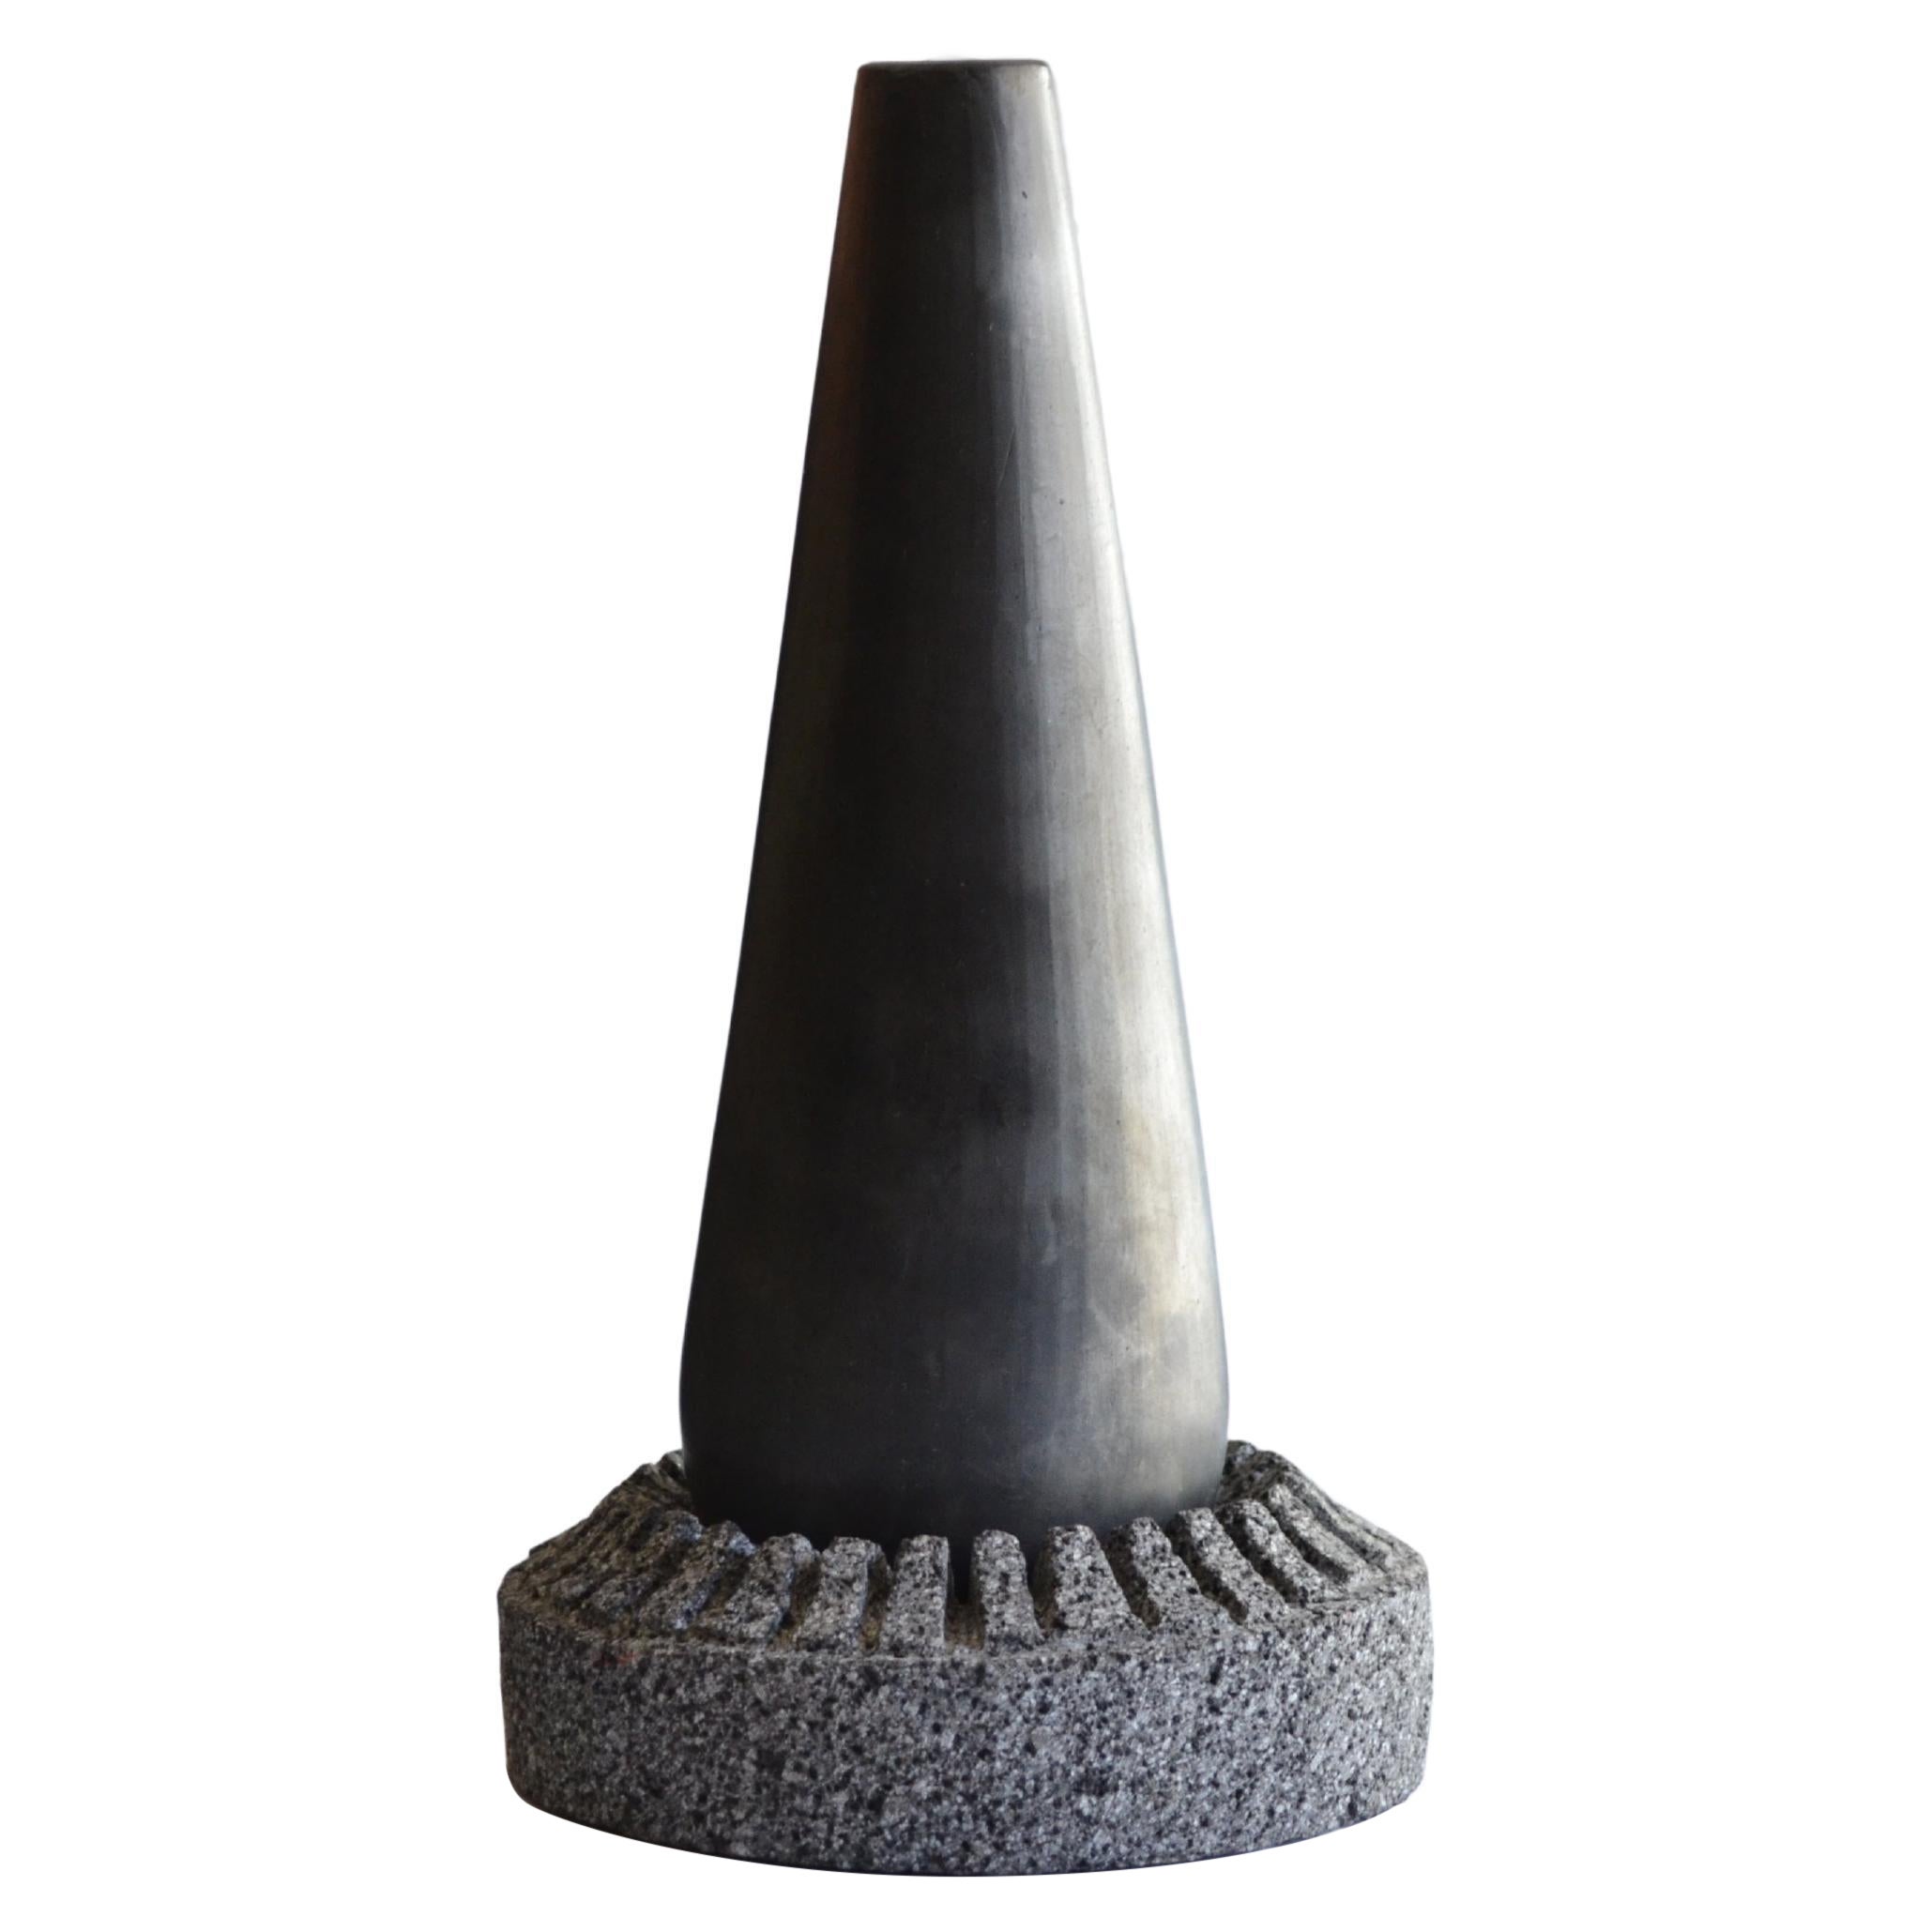 Bouteille à eau sculpturale en pierre et argile noire, sculptée à la main, pour table en pierre de lave 